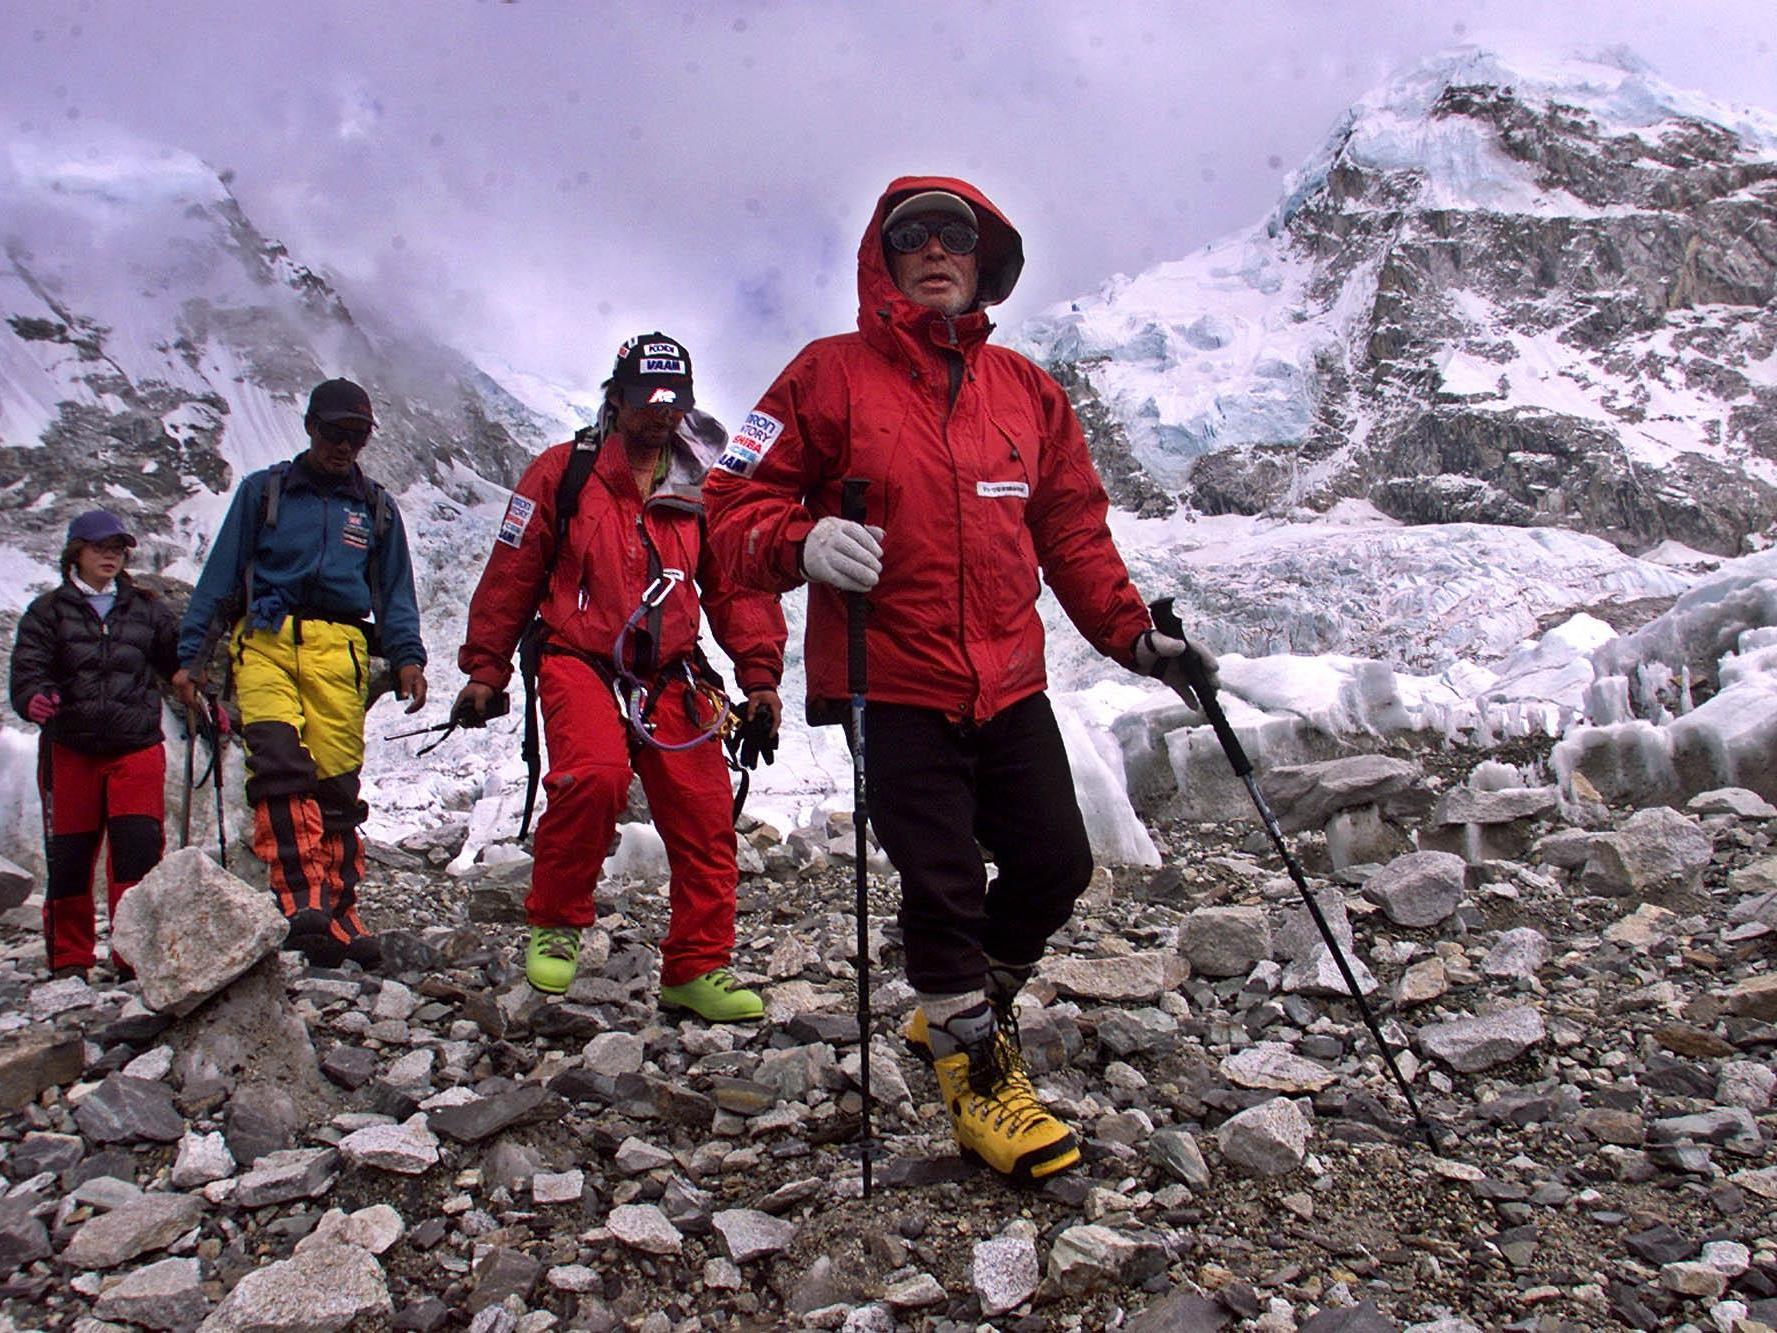 Der Japaner Yuichiro Miura hat den Mount Everest auch schon mit 70 Jahren bezwungen.